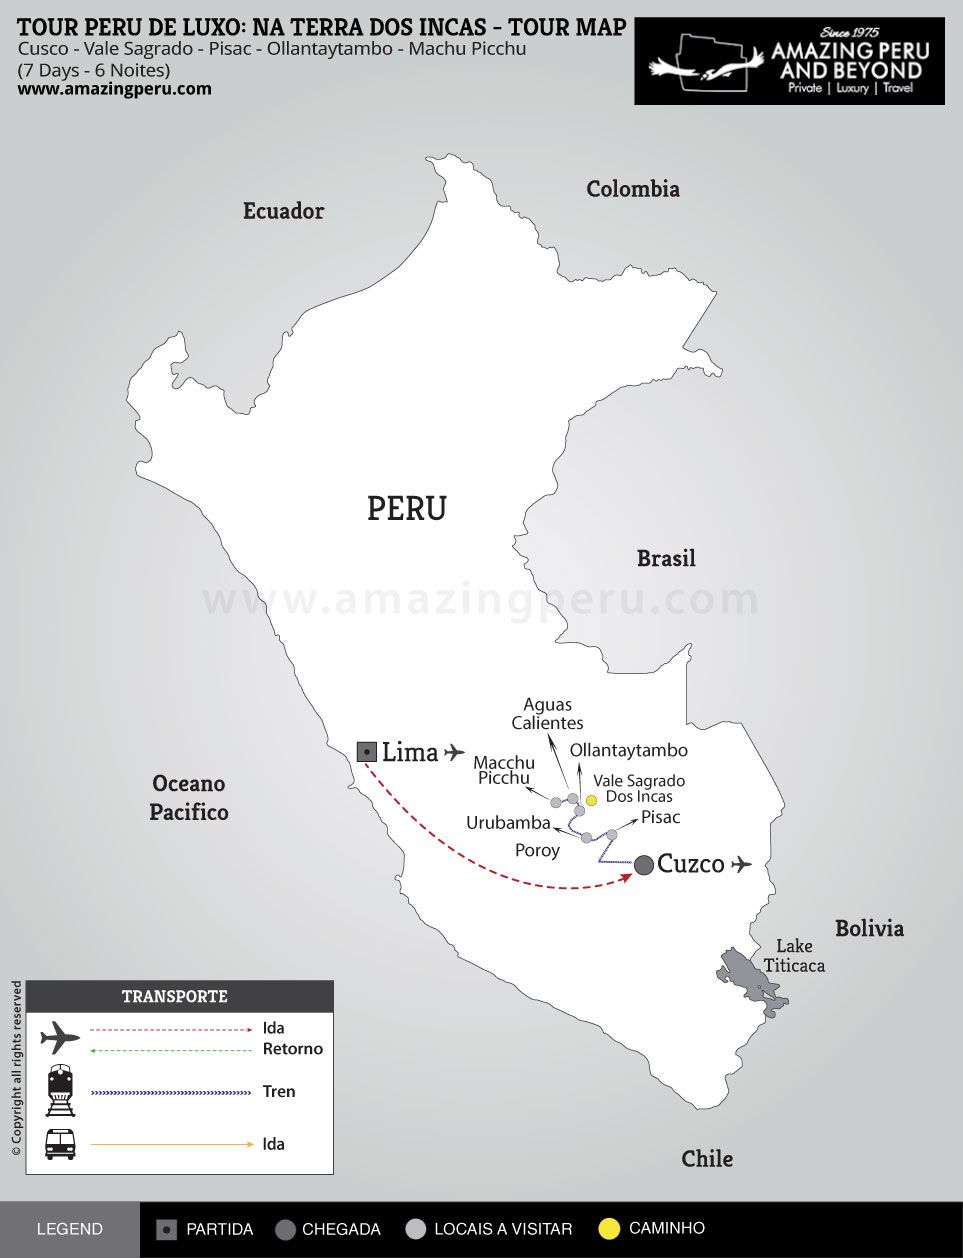 Tour Peru de luxo: Na terra dos Incas - 7 days / 6 nights.